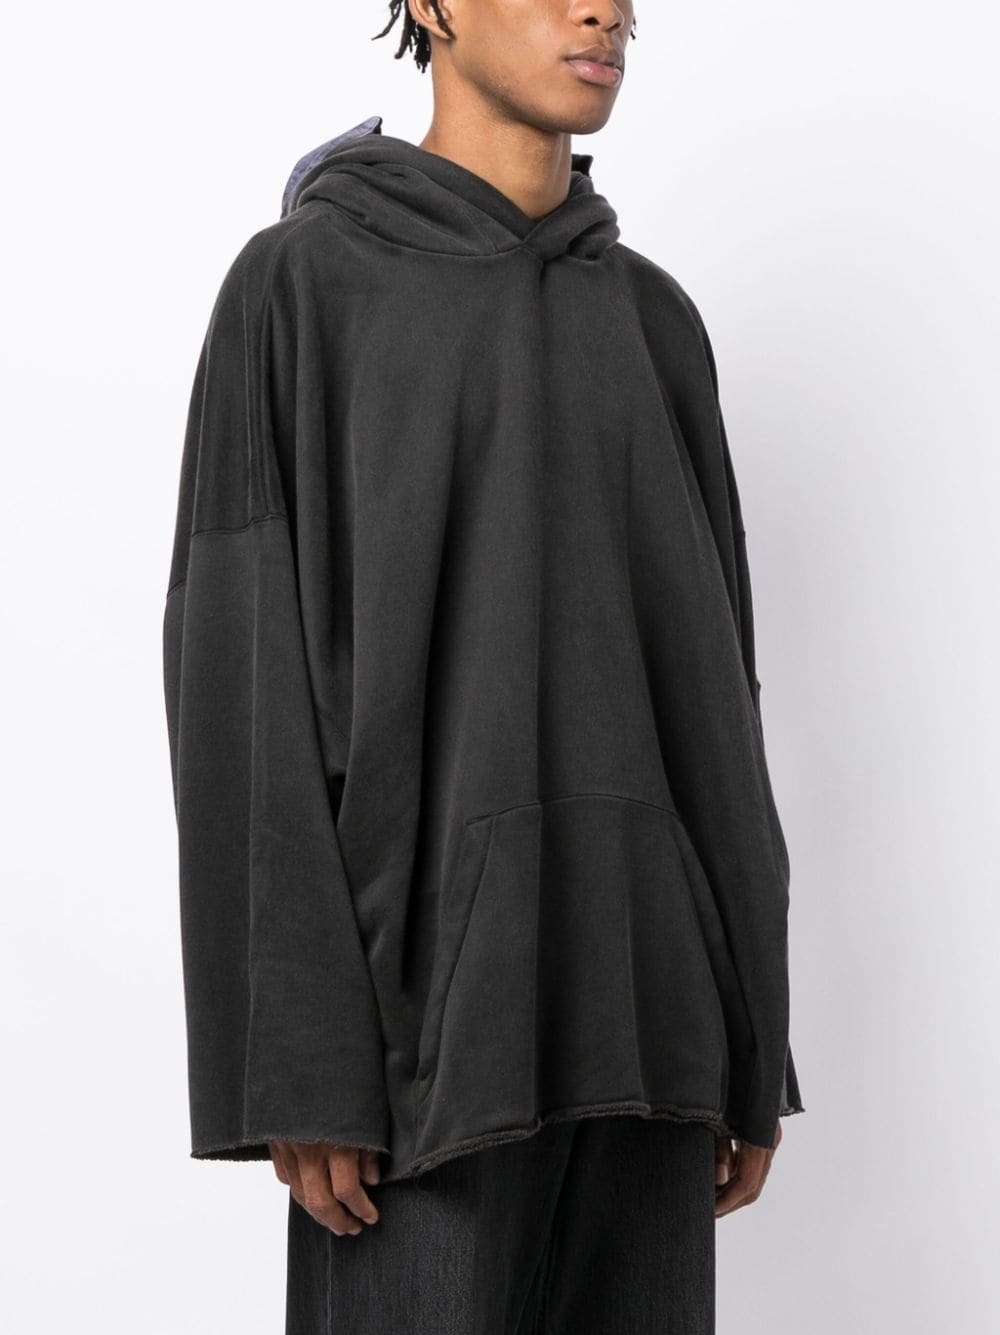 animal-print hooded sweatshirt - 3